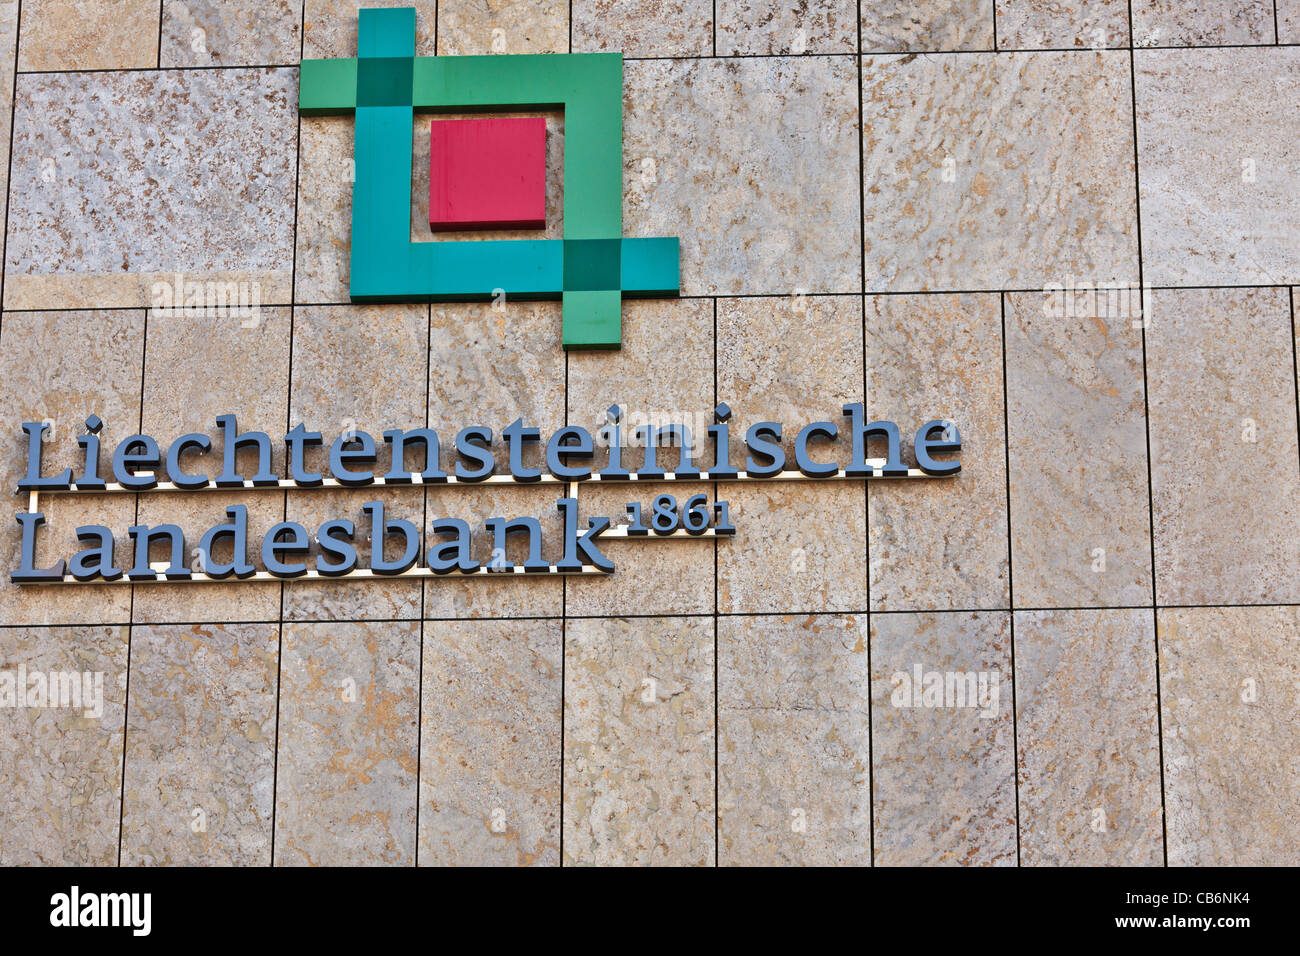 Sede del Banco - Liechtensteinische Landesbank, Vaduz, Principado de Liechtenstein Foto de stock